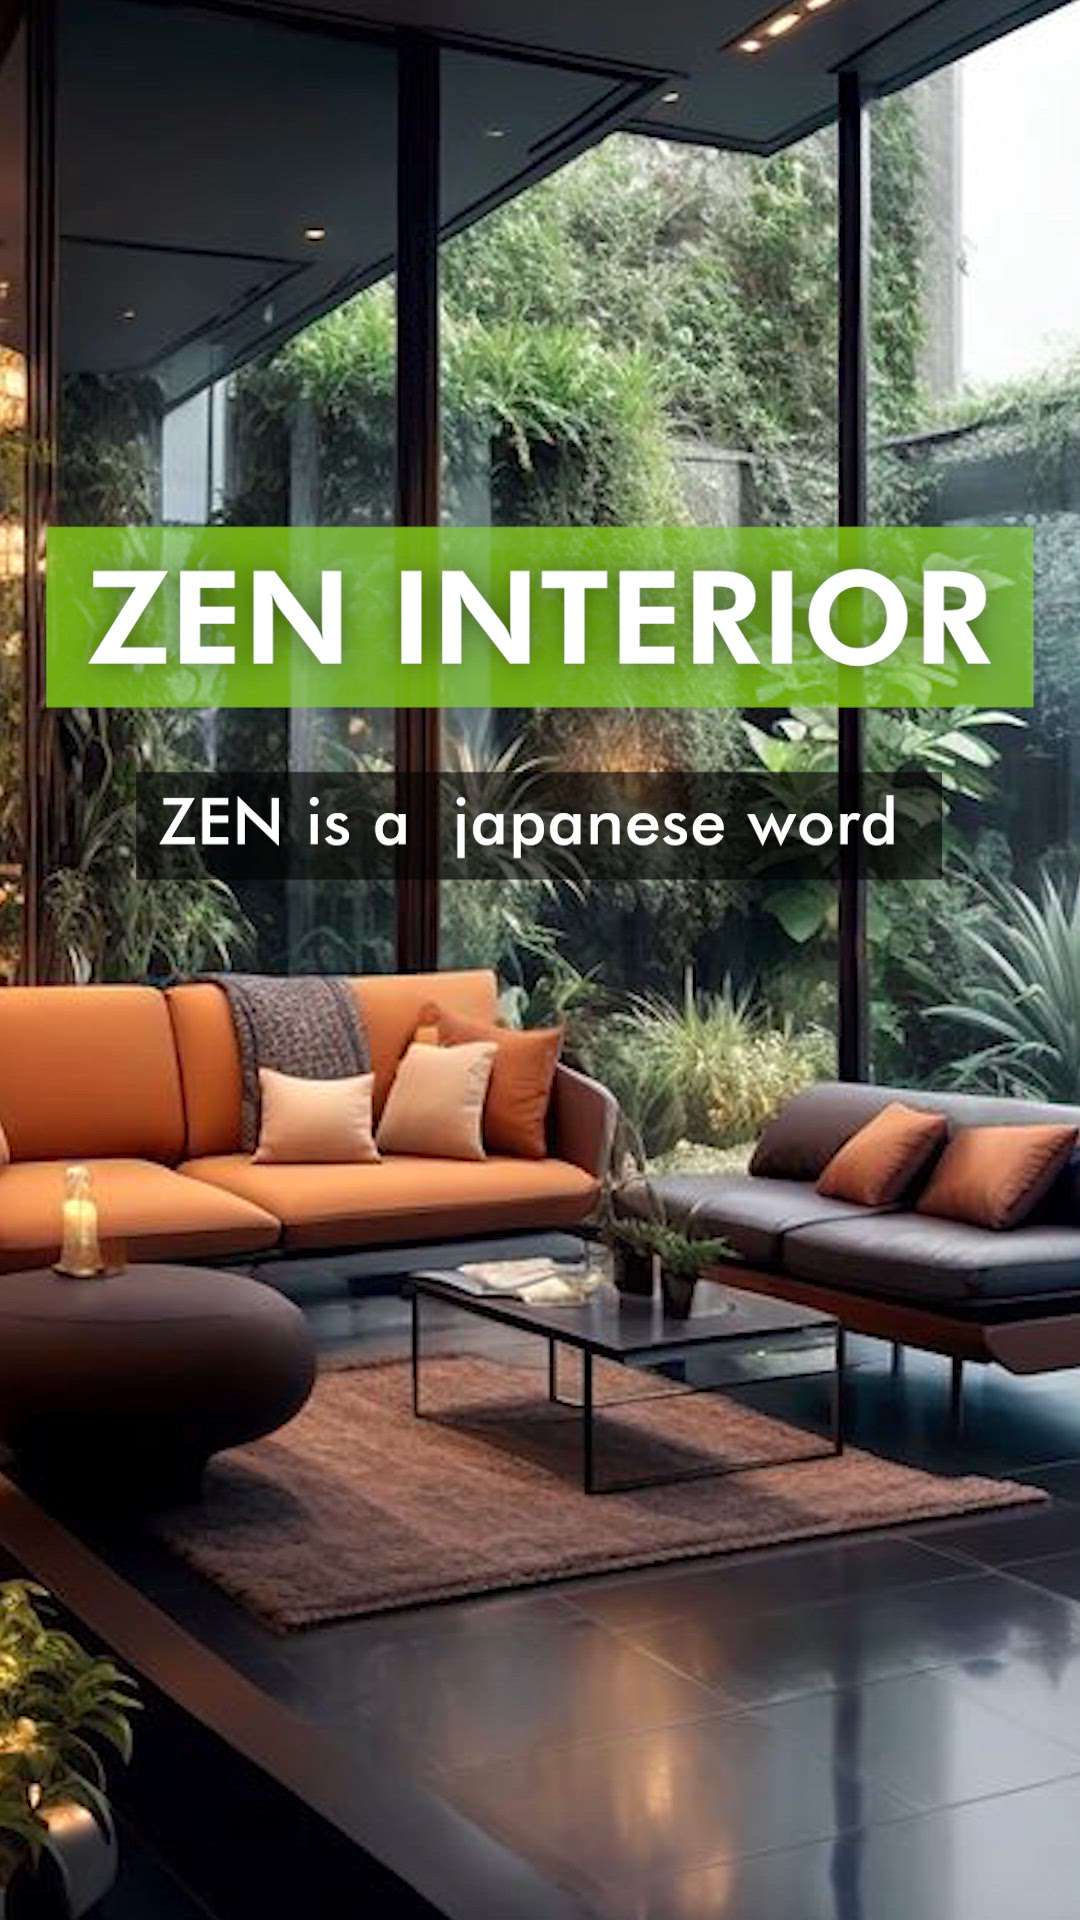 zen interior: Interior style part 2
 #creatorsofkolo  #avoid  #interiorideas  # design
 #interiordesign  #interior #mistakes  #arjanissony  #janissony  #axyzarchitects  #InteriorDesigner  #Architectural&Interior